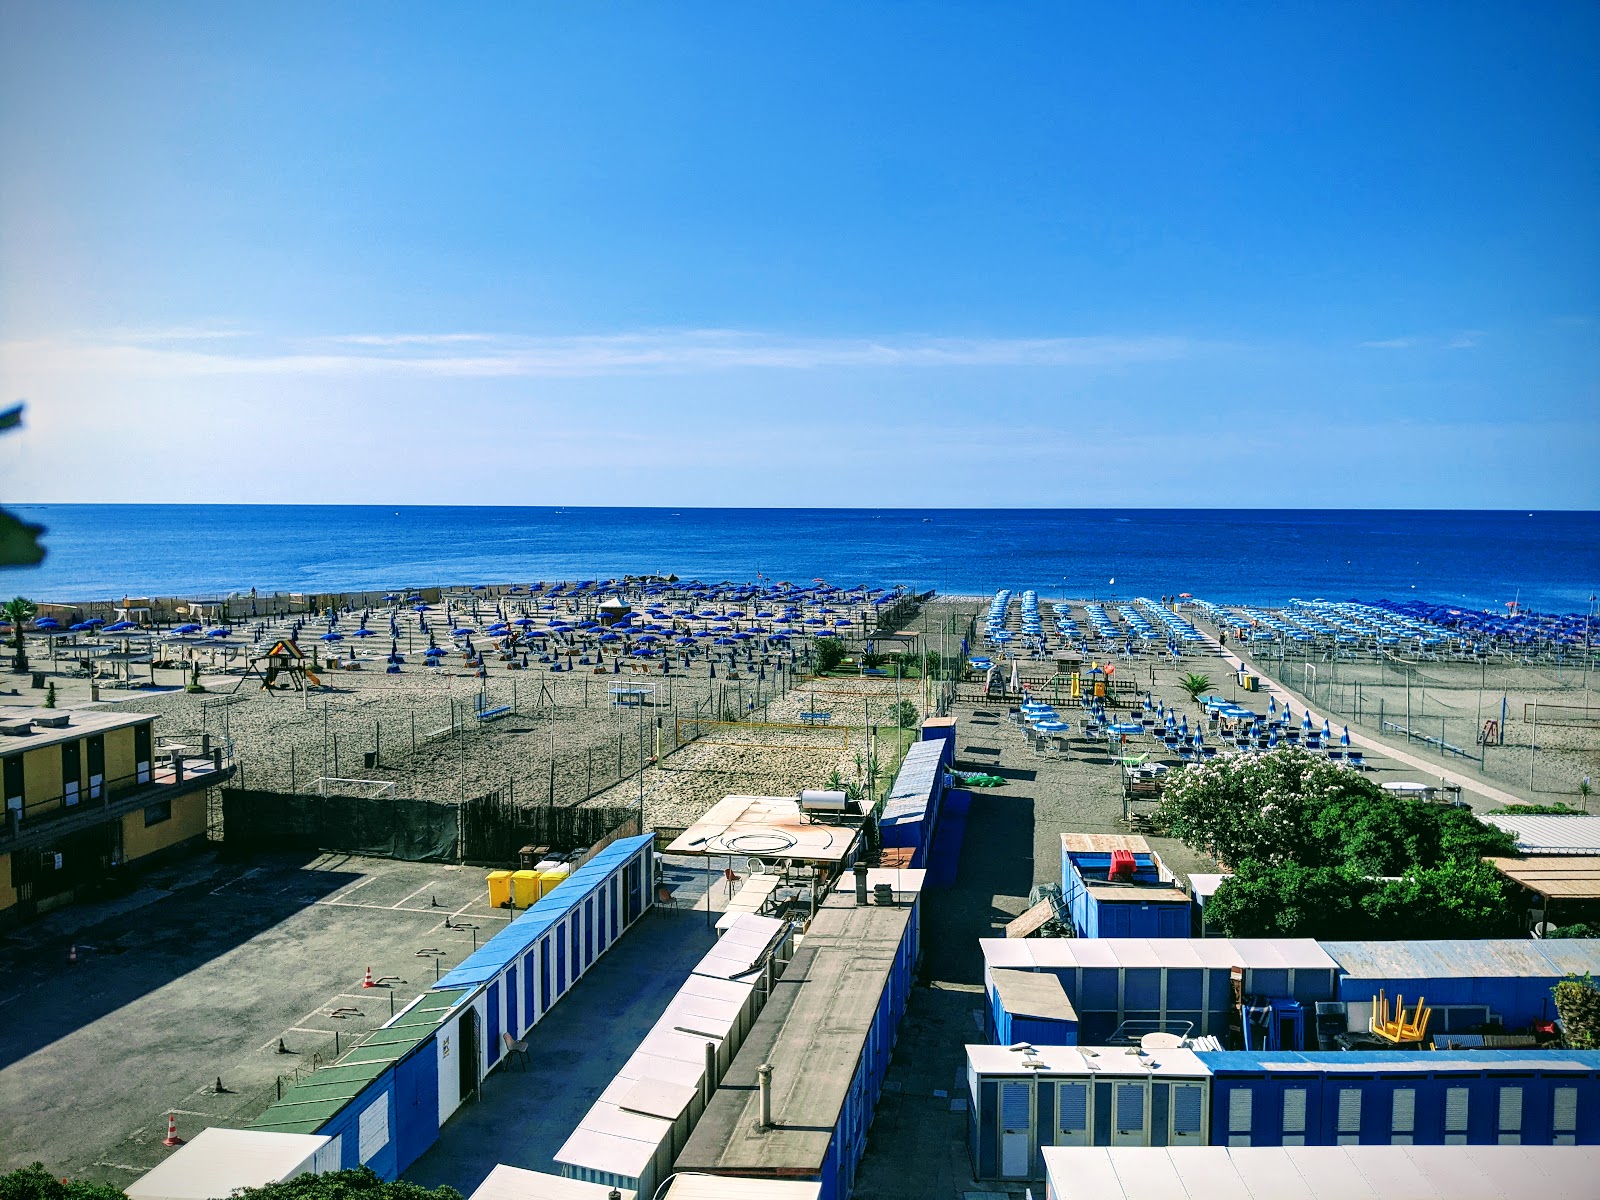 Foto van Spiaggia Tito Groppo met blauw water oppervlakte